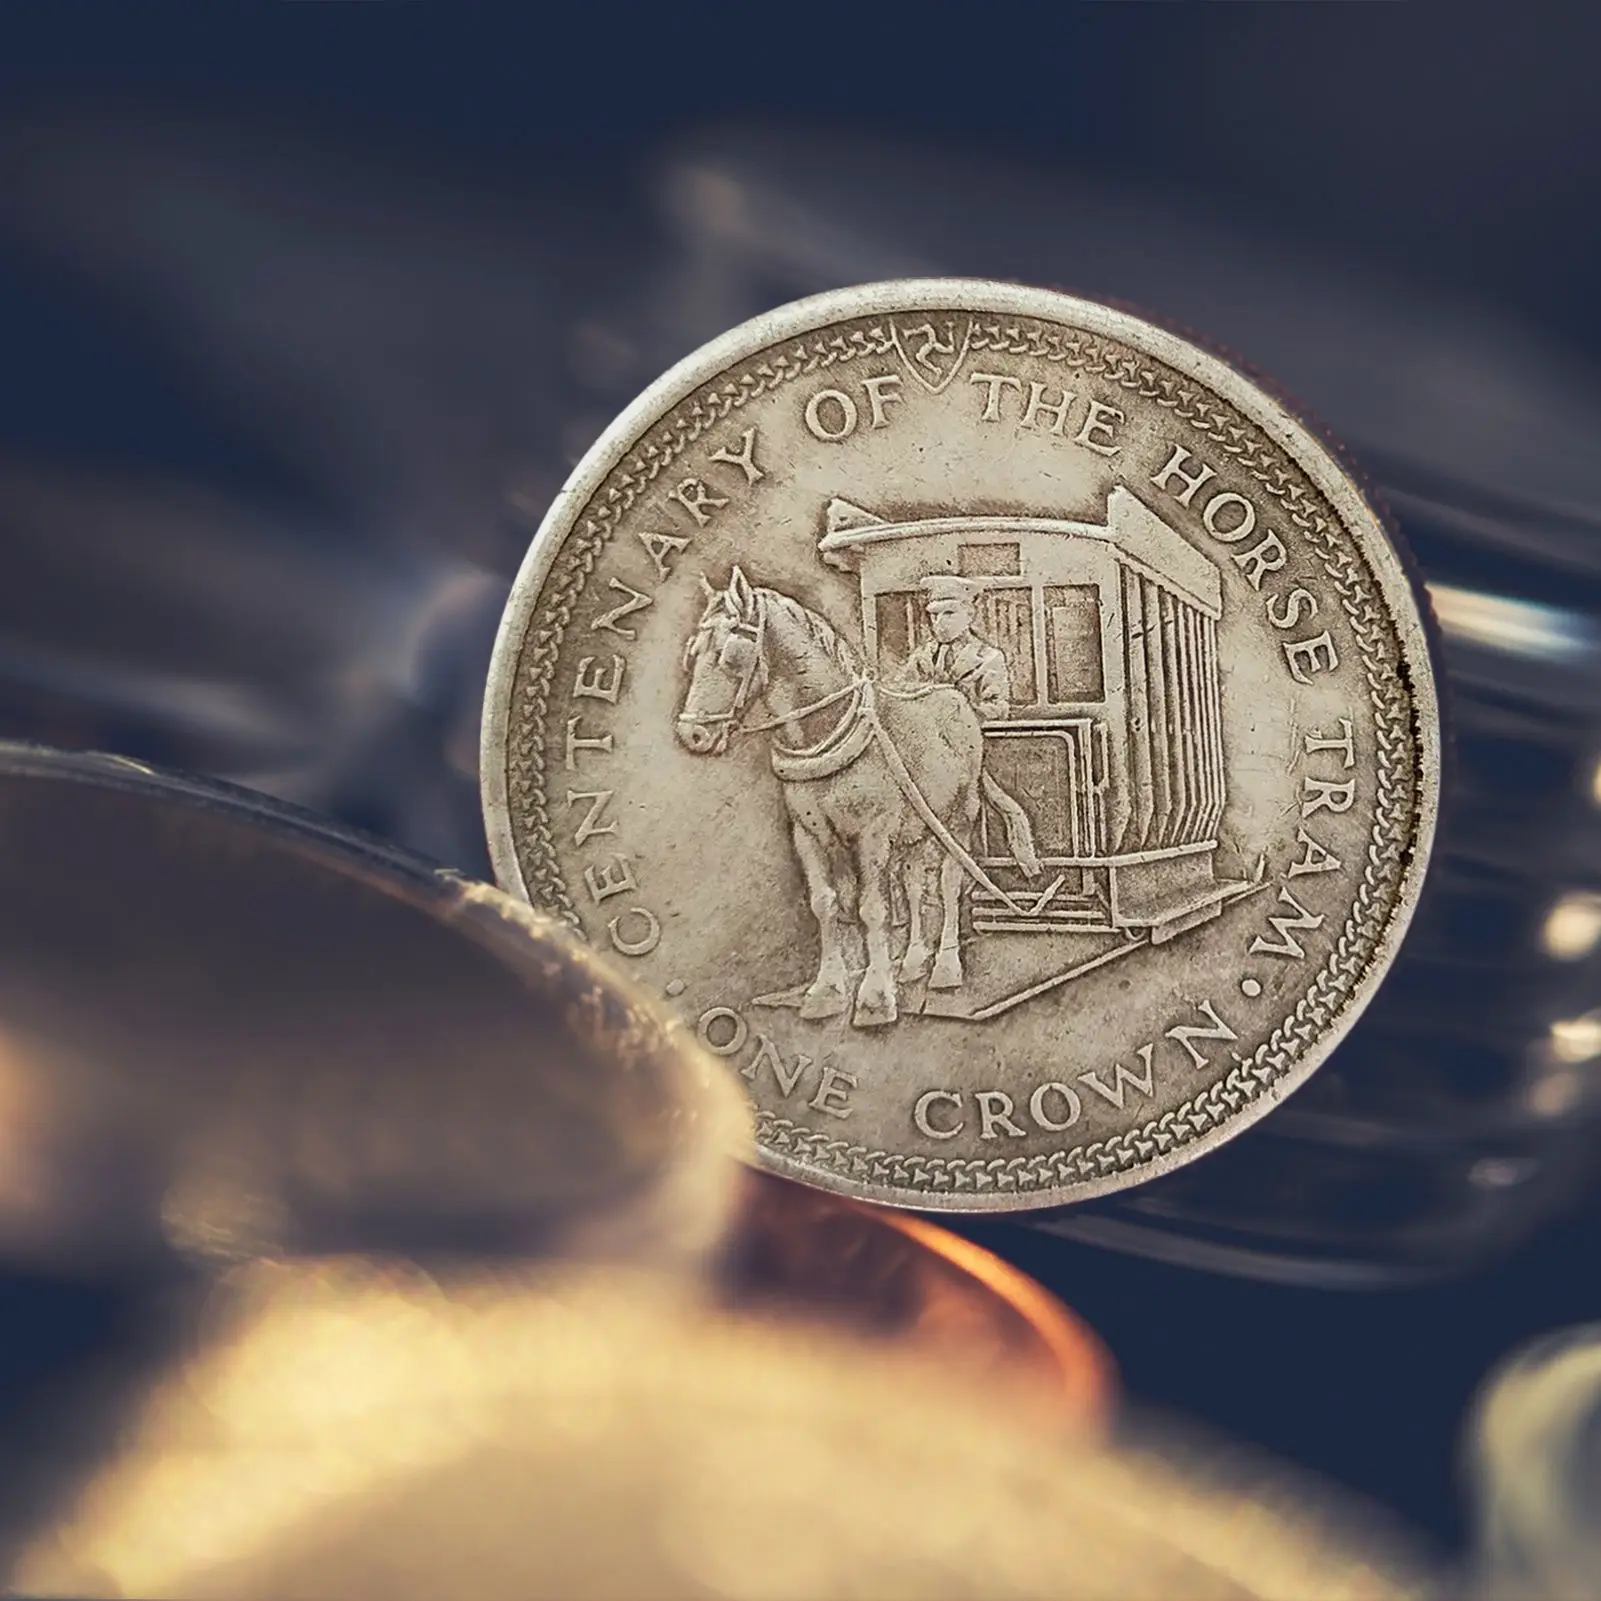 Сувенирная монета королевы Елизаветы II ее величество королева Елизавета копия